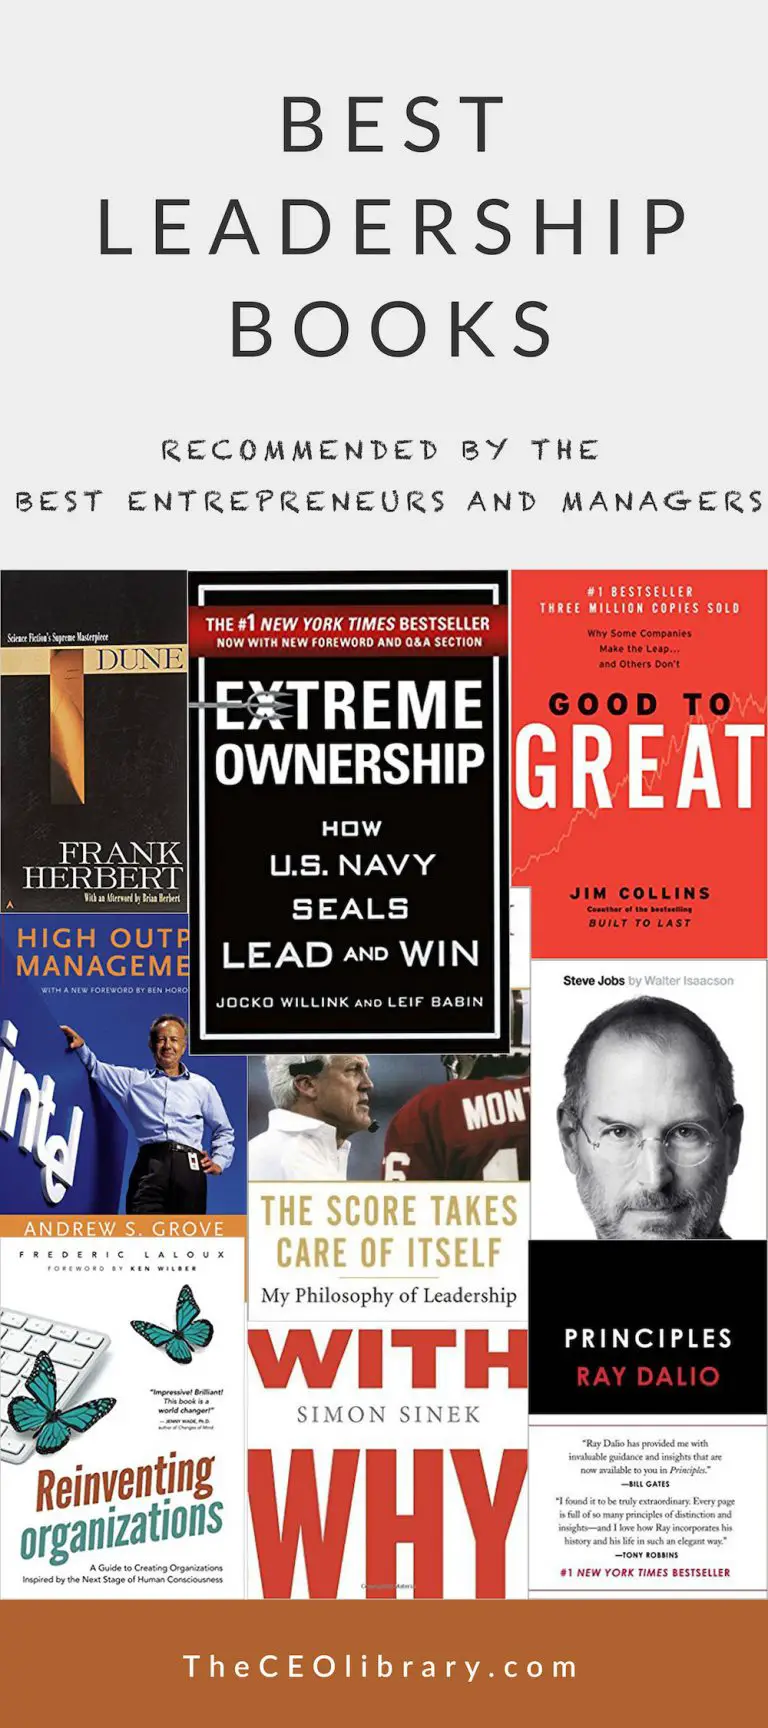 Best Leadership Books by World's Top Entrepreneurs